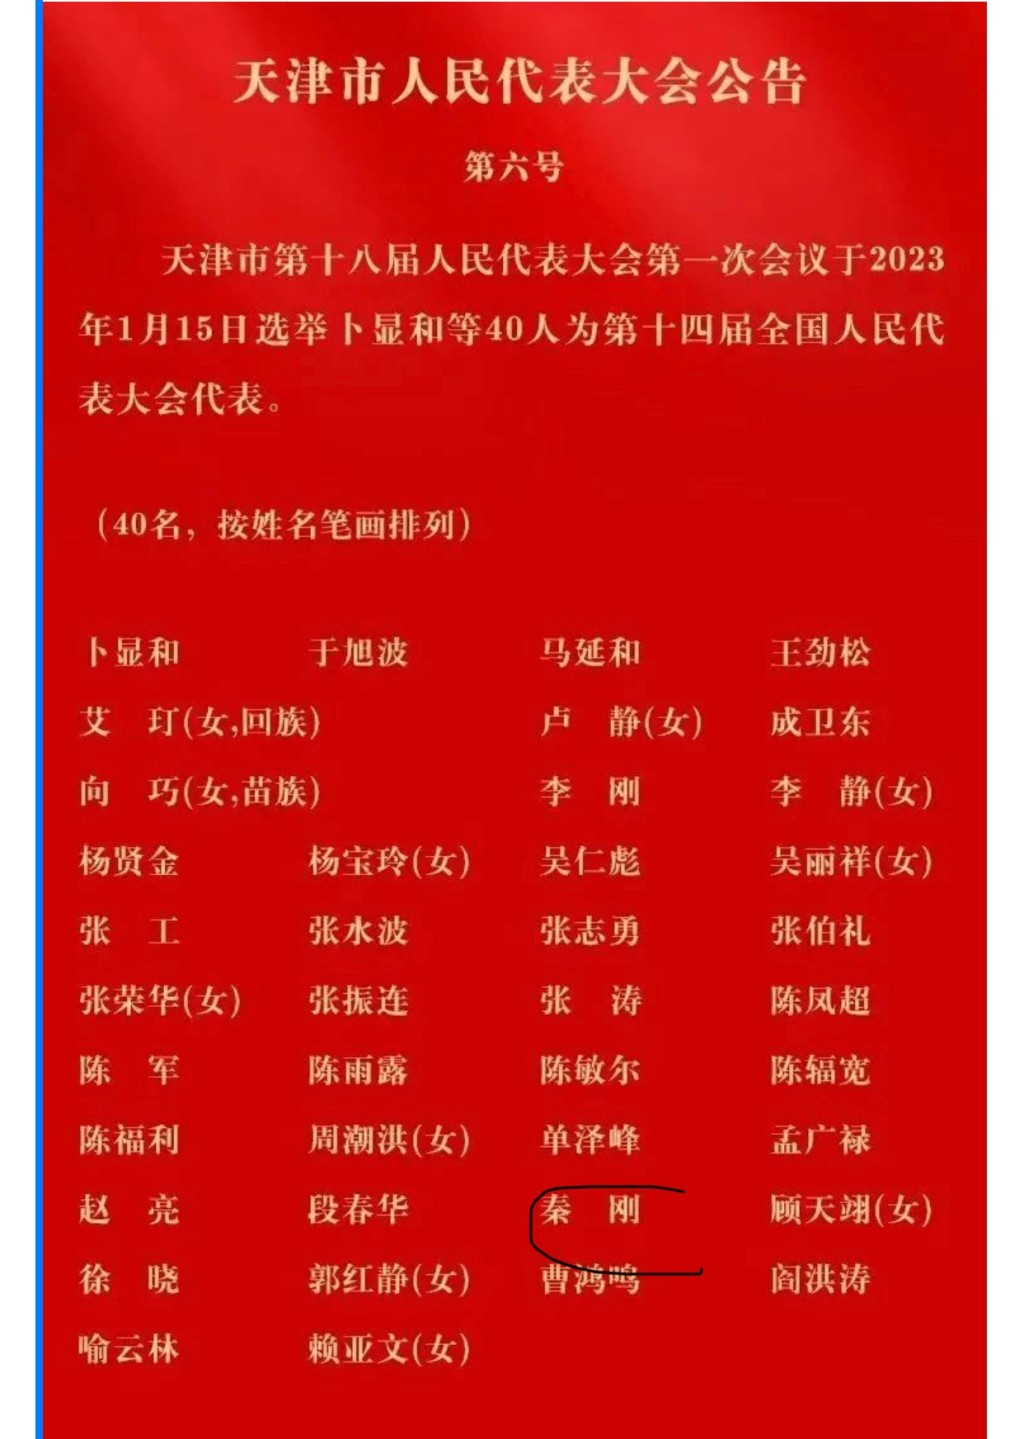 秦剛近日在天津當選全國人大代表。